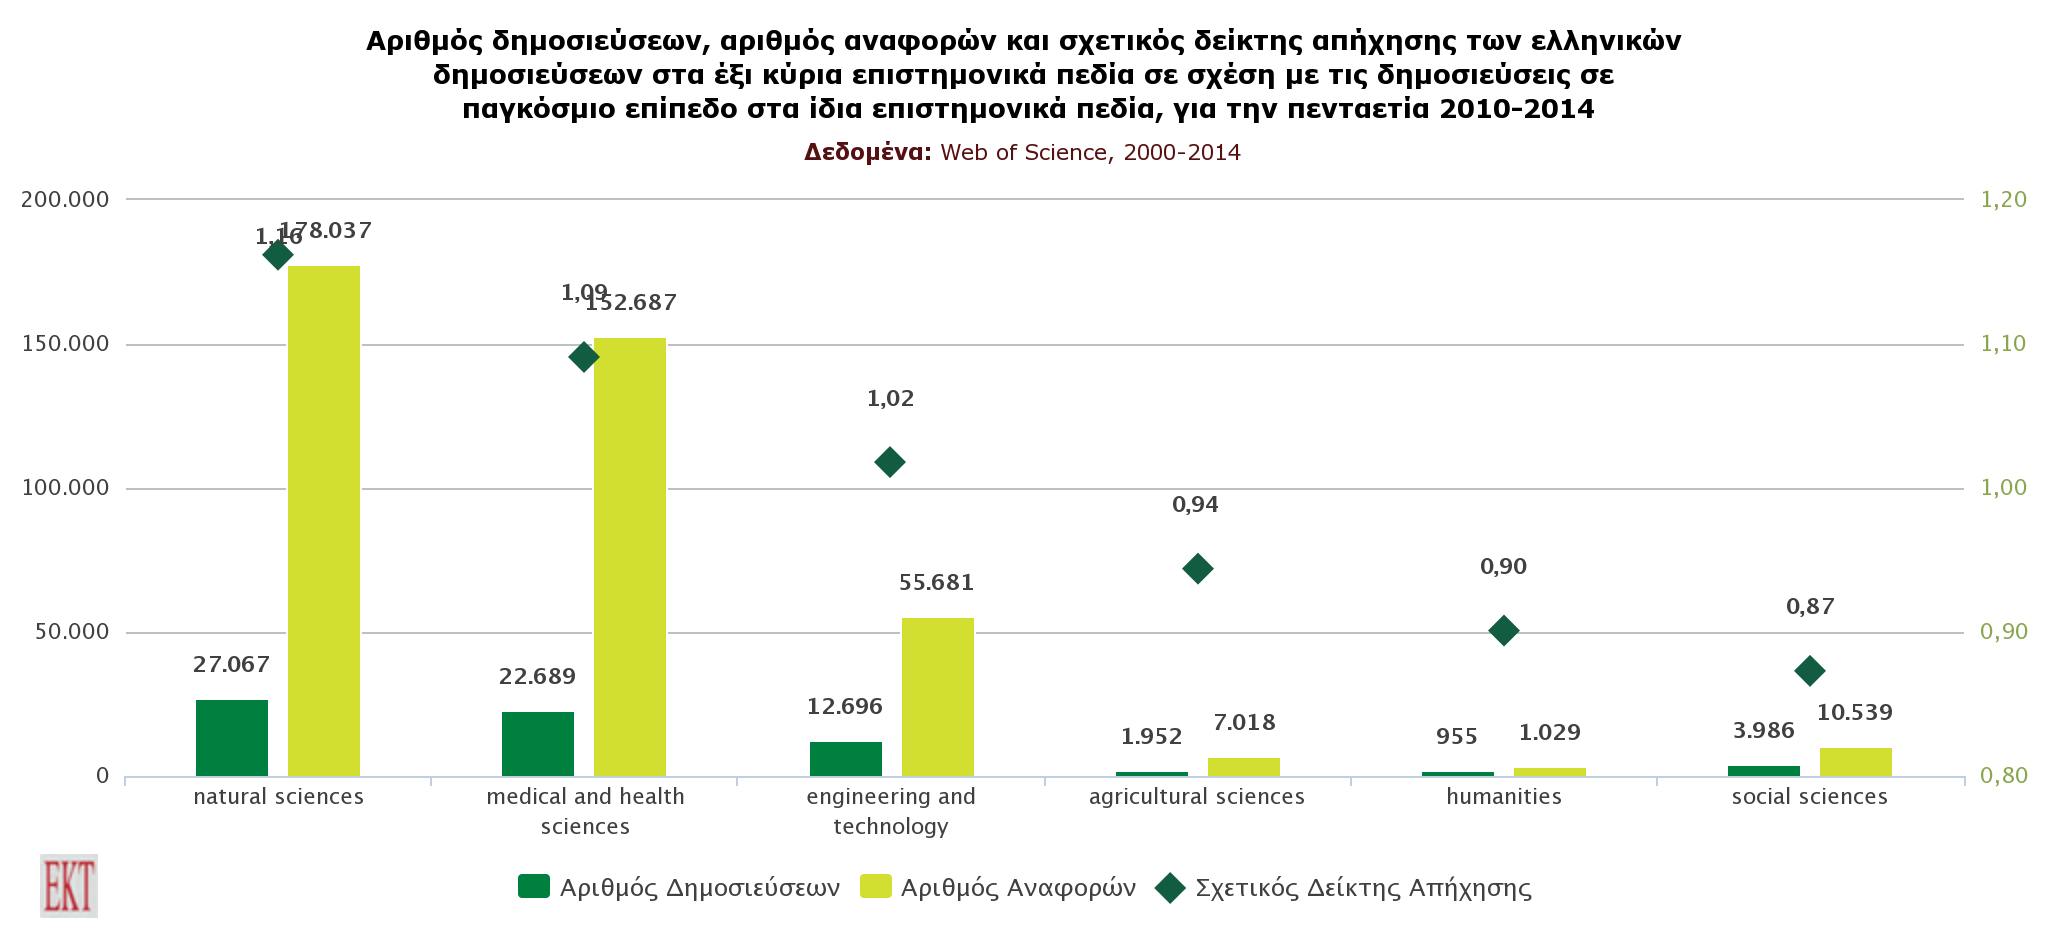 Αυξάνεται η διεθνής απήχηση των ελληνικών επιστημονικών δημοσιεύσεων, με βάση νέα μελέτη του ΕΚΤ